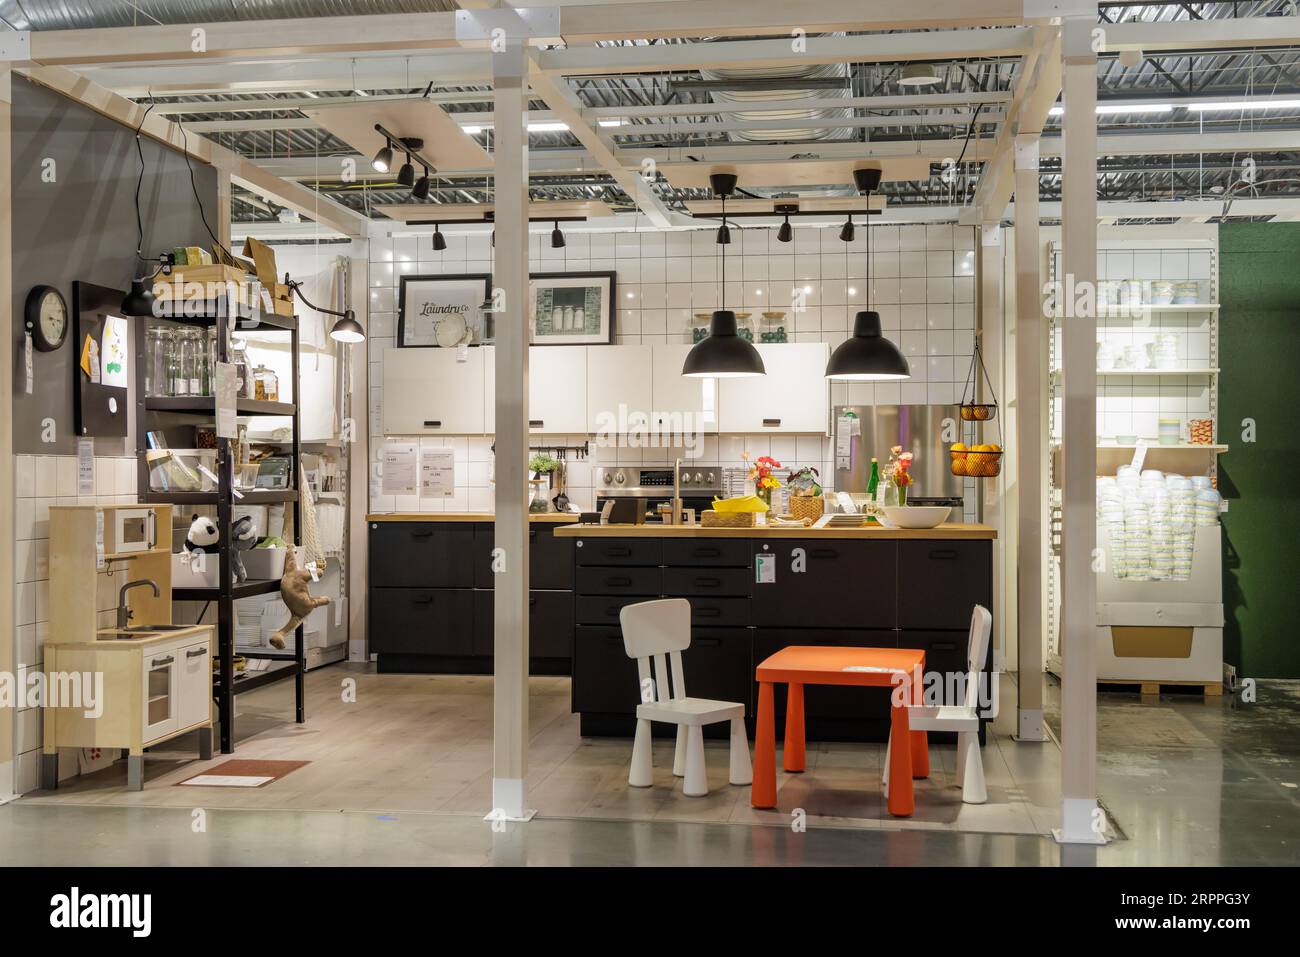 Muebles De La Cocina En Venta En La Tienda De Ikea, Diseño Interior Foto de  archivo editorial - Imagen de industria, colorido: 154620908